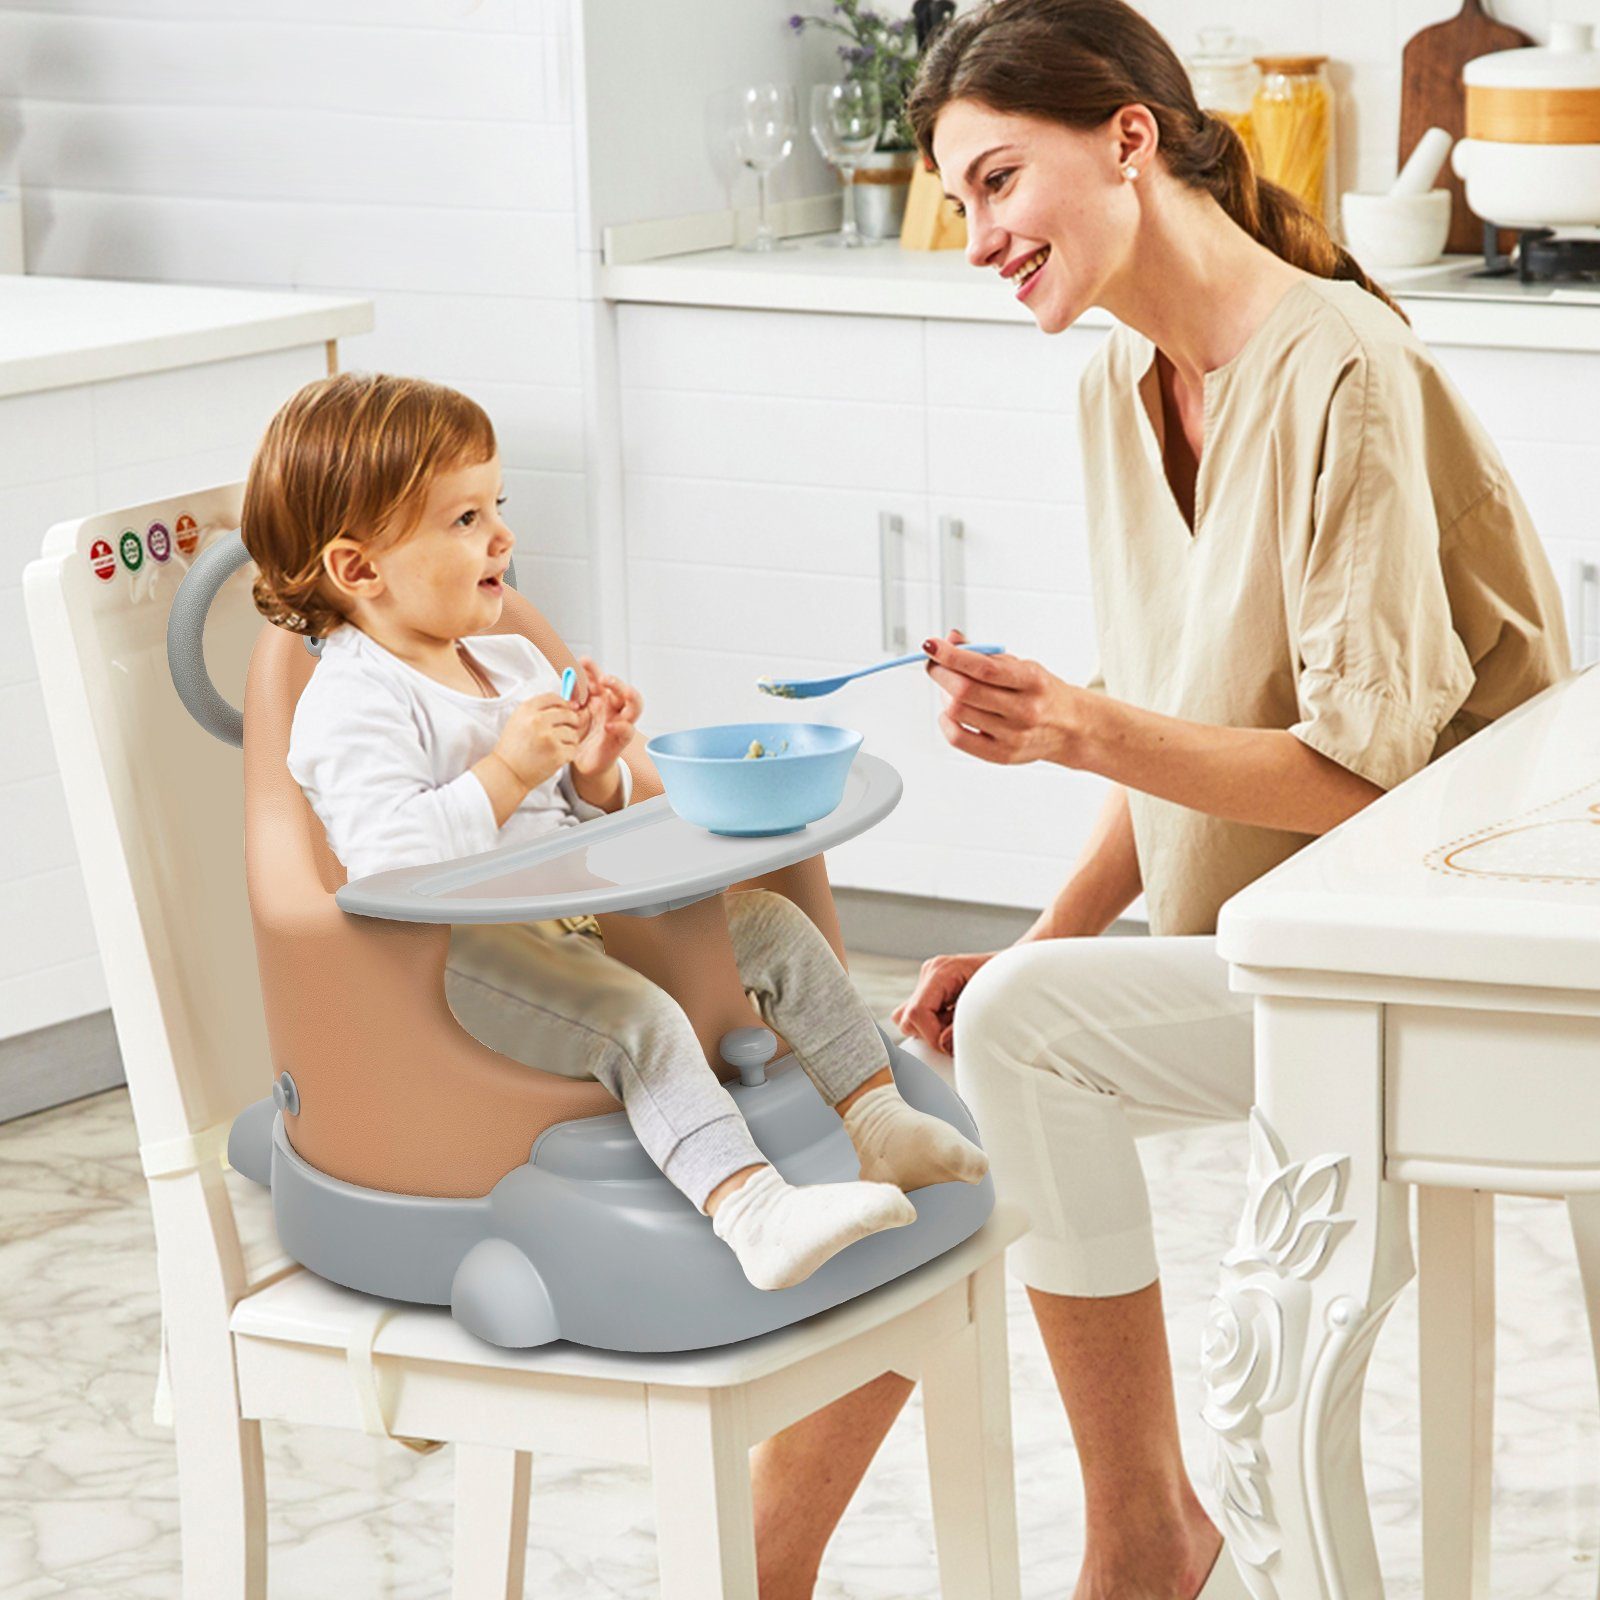 1X Baby Sicherheits Gurt, 3 Punkt Sitz Gurt für Kinder Hoch Stuhl Kinder Sit h2t 